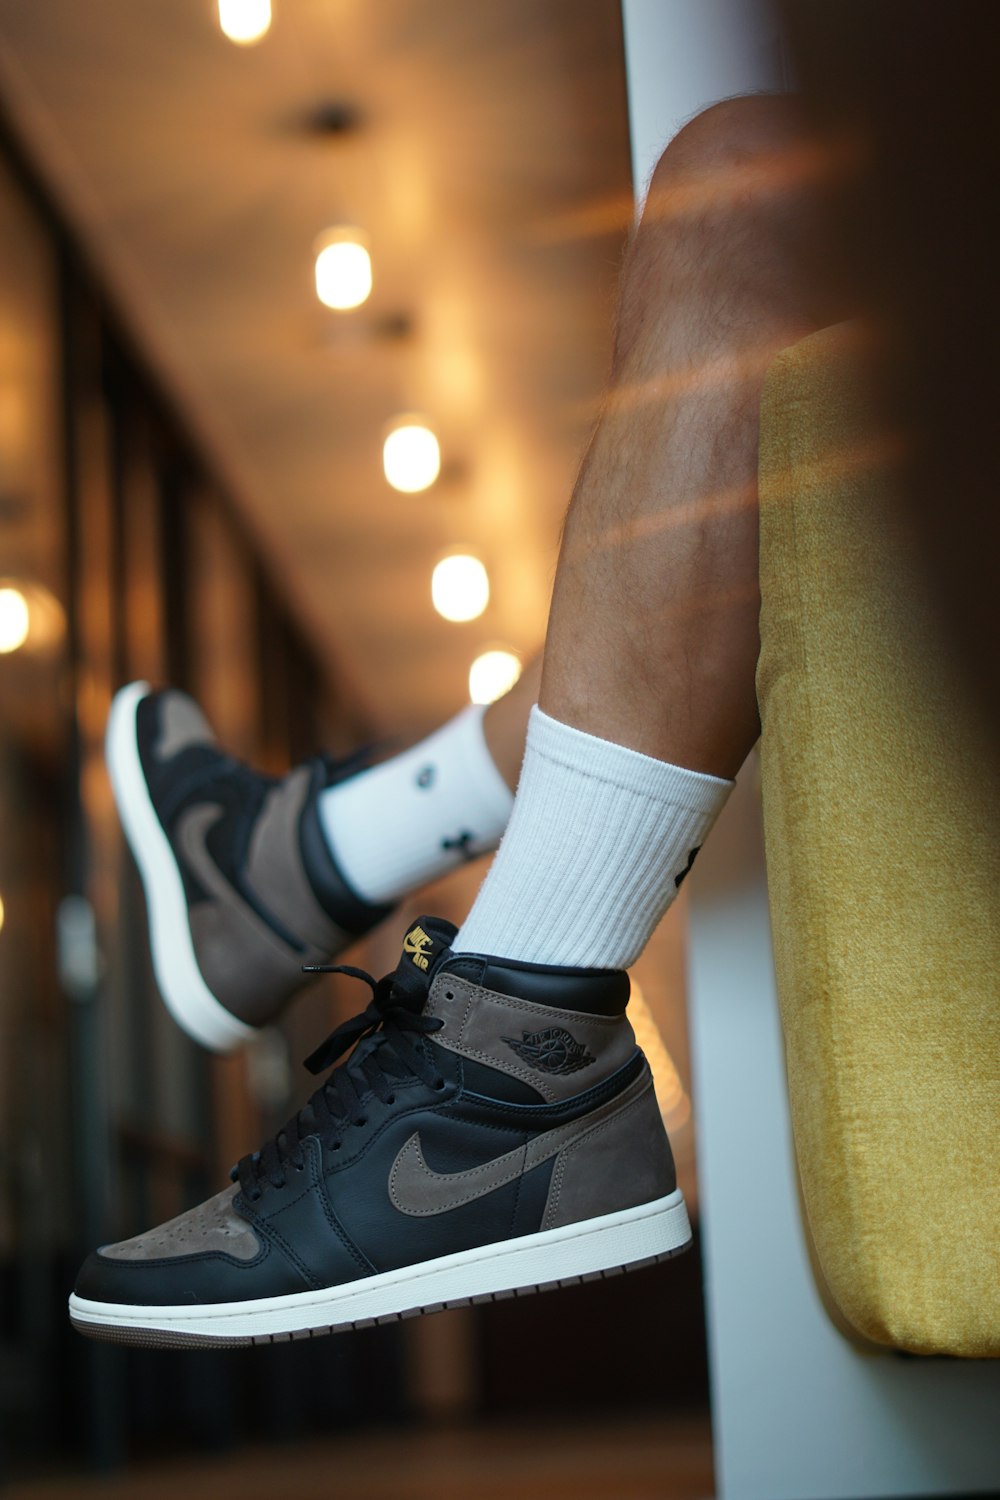 Des pieds d’homme avec des chaussettes blanches et des baskets Nike